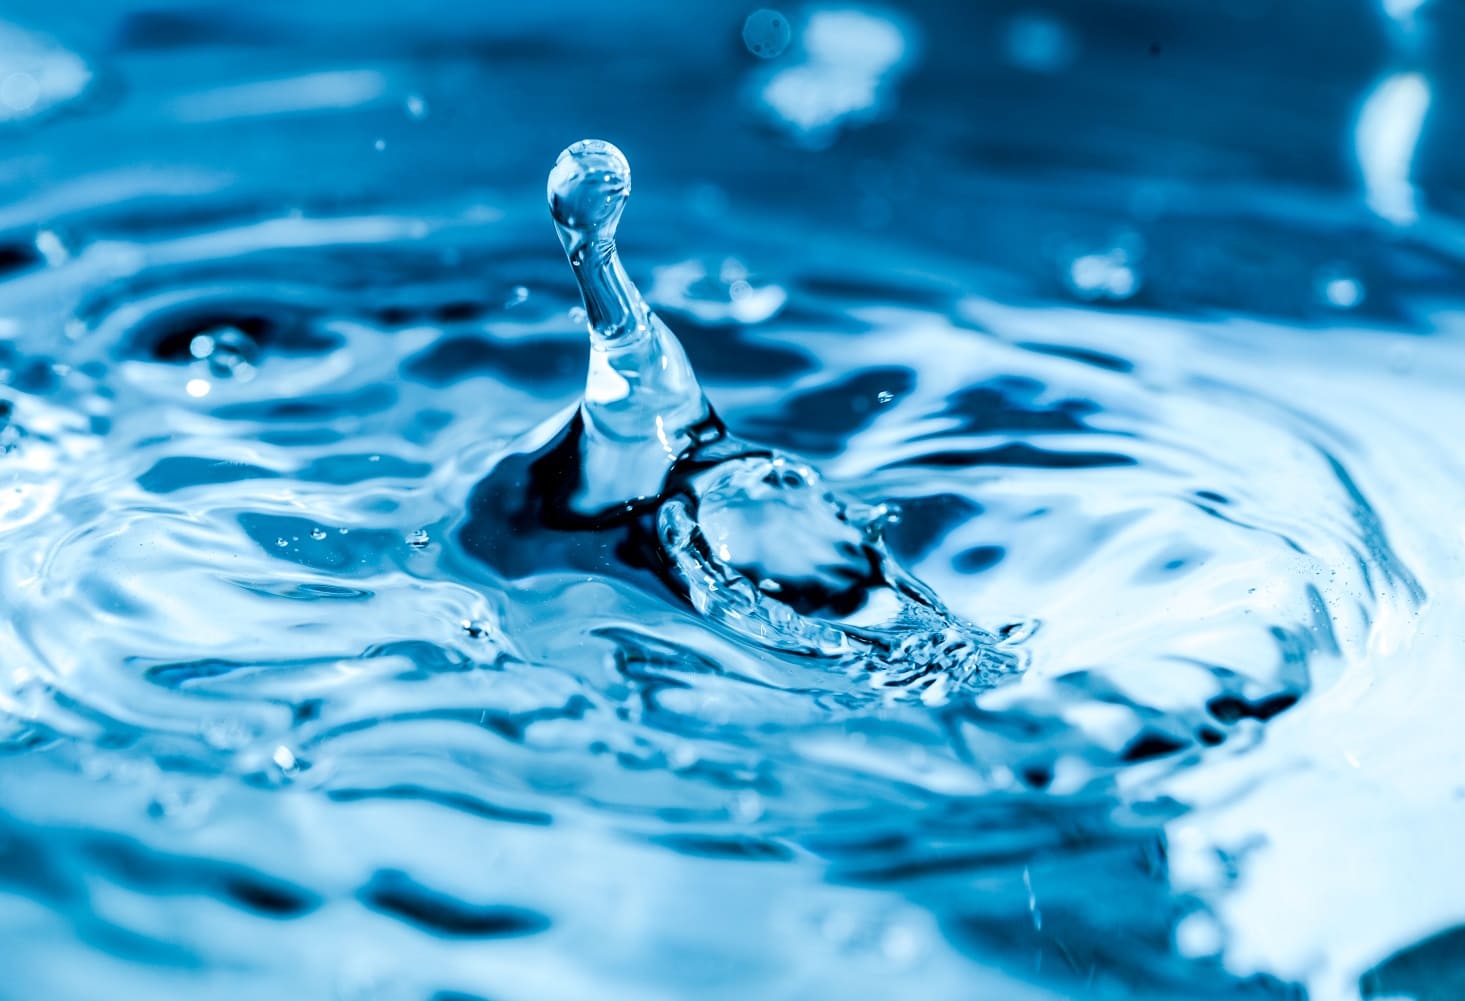 Acqua potabile: caratteristiche e differenza con l'acqua minerale